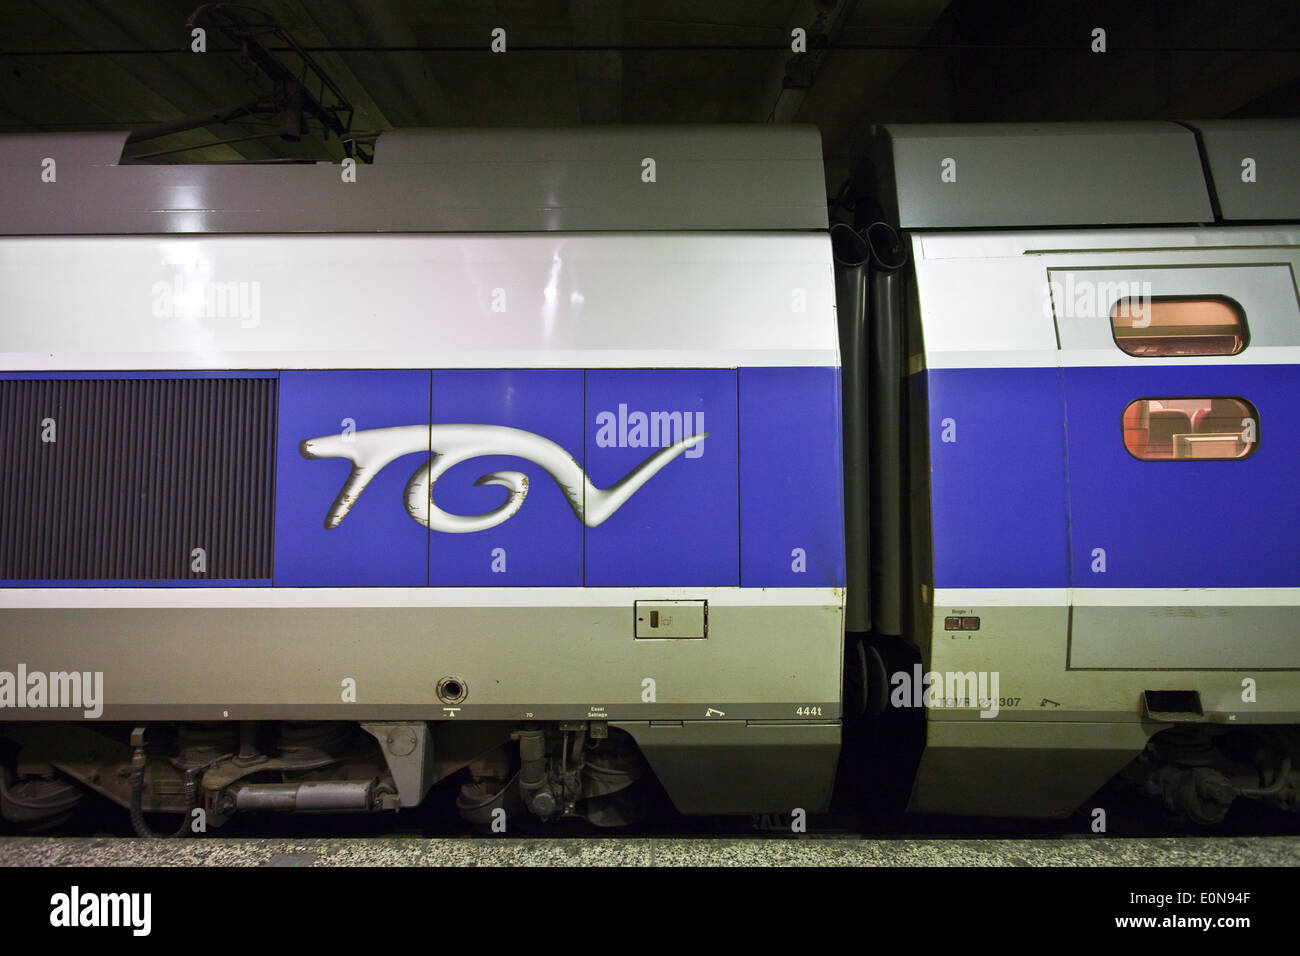 TGV Réseau im Bahnhof Montparnasse, Paris, Frankreich - TGV Réseau in Montparnasse Station, Paris, France Stock Photo